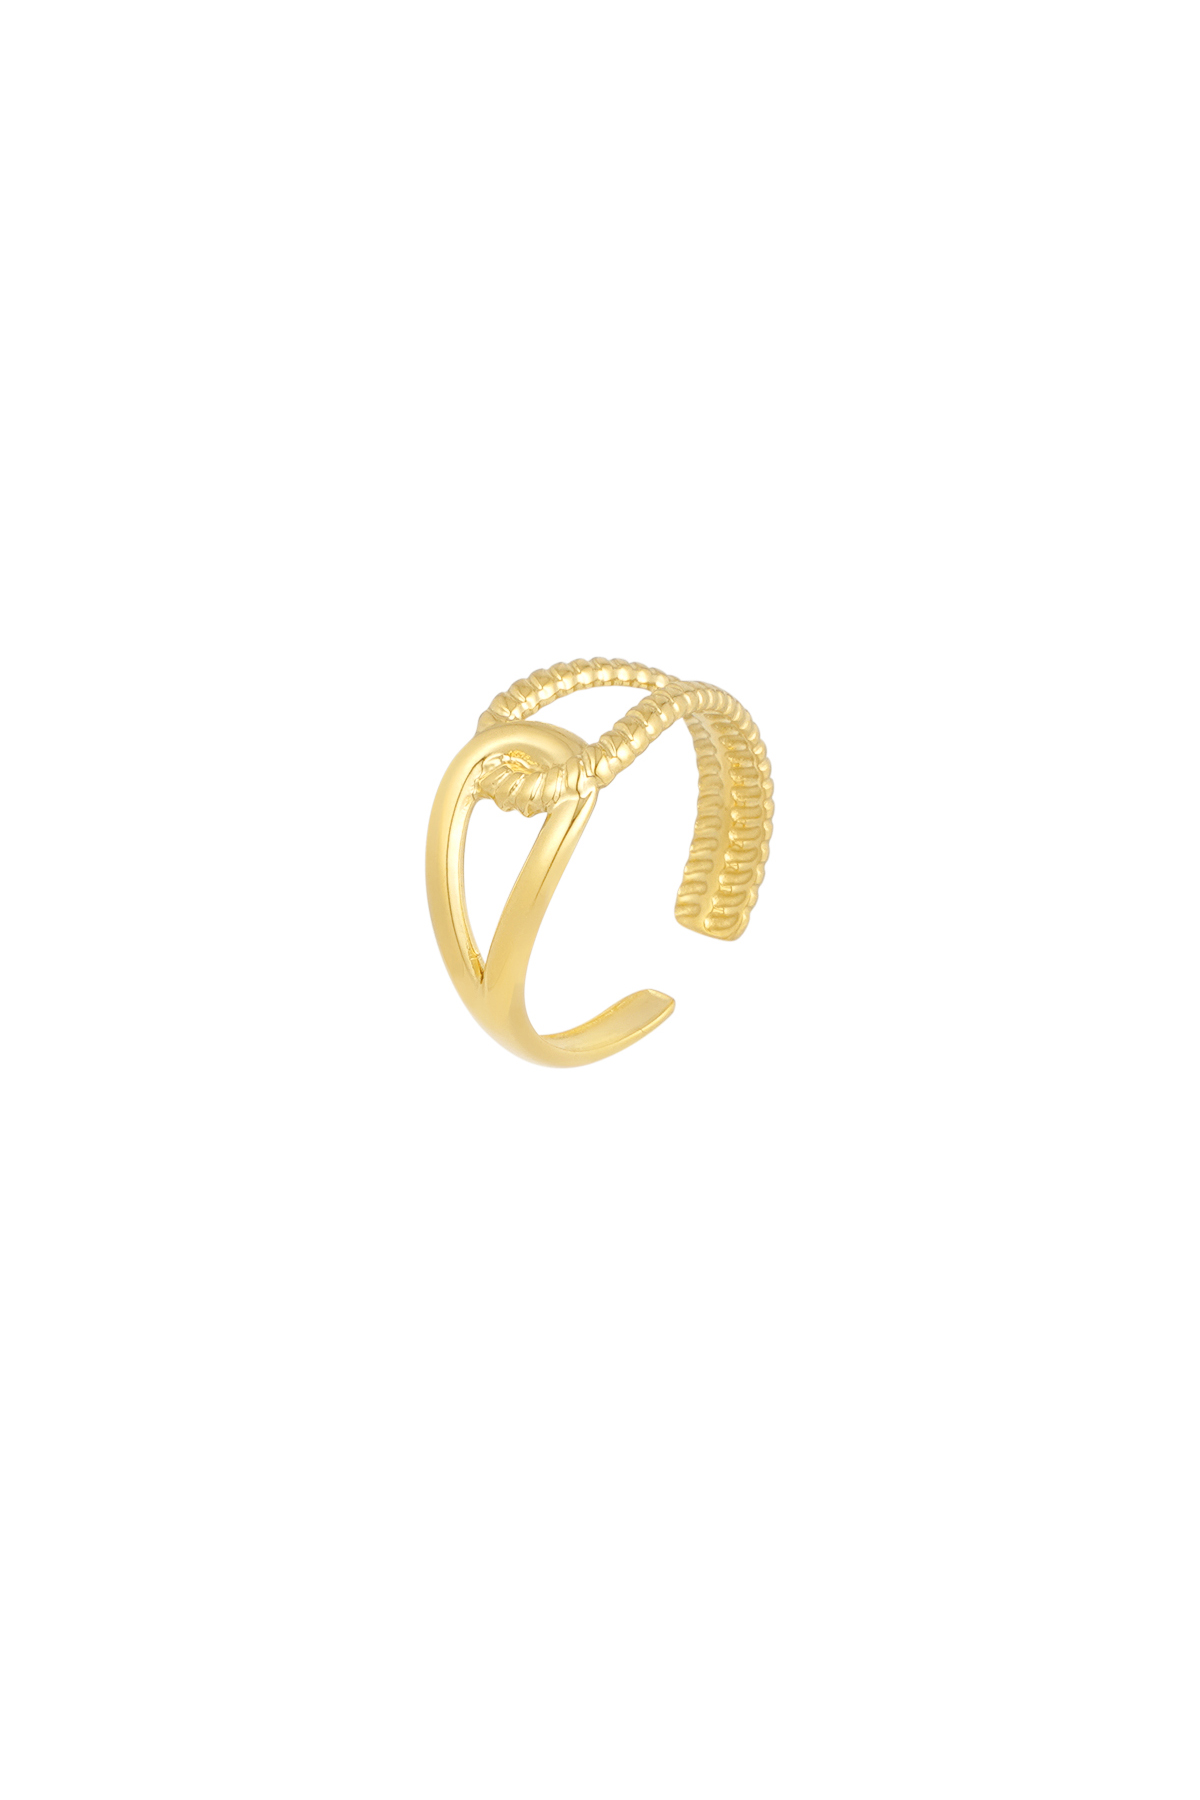 Ring für immer verbunden - Gold